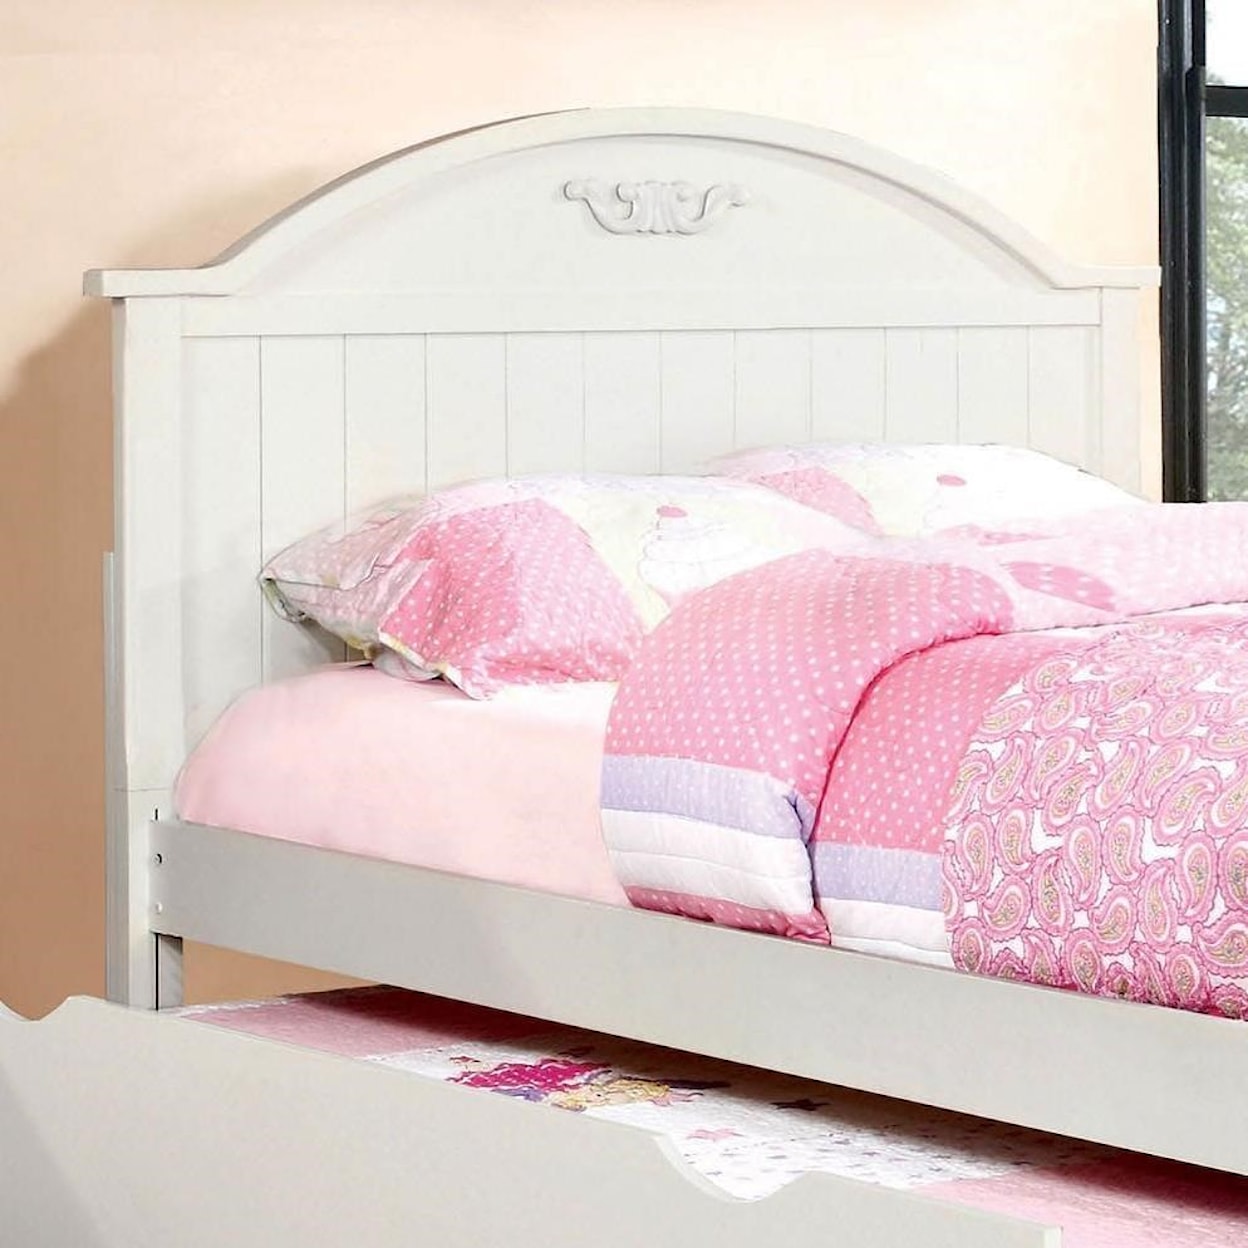 Furniture of America - FOA Medina Twin Bed